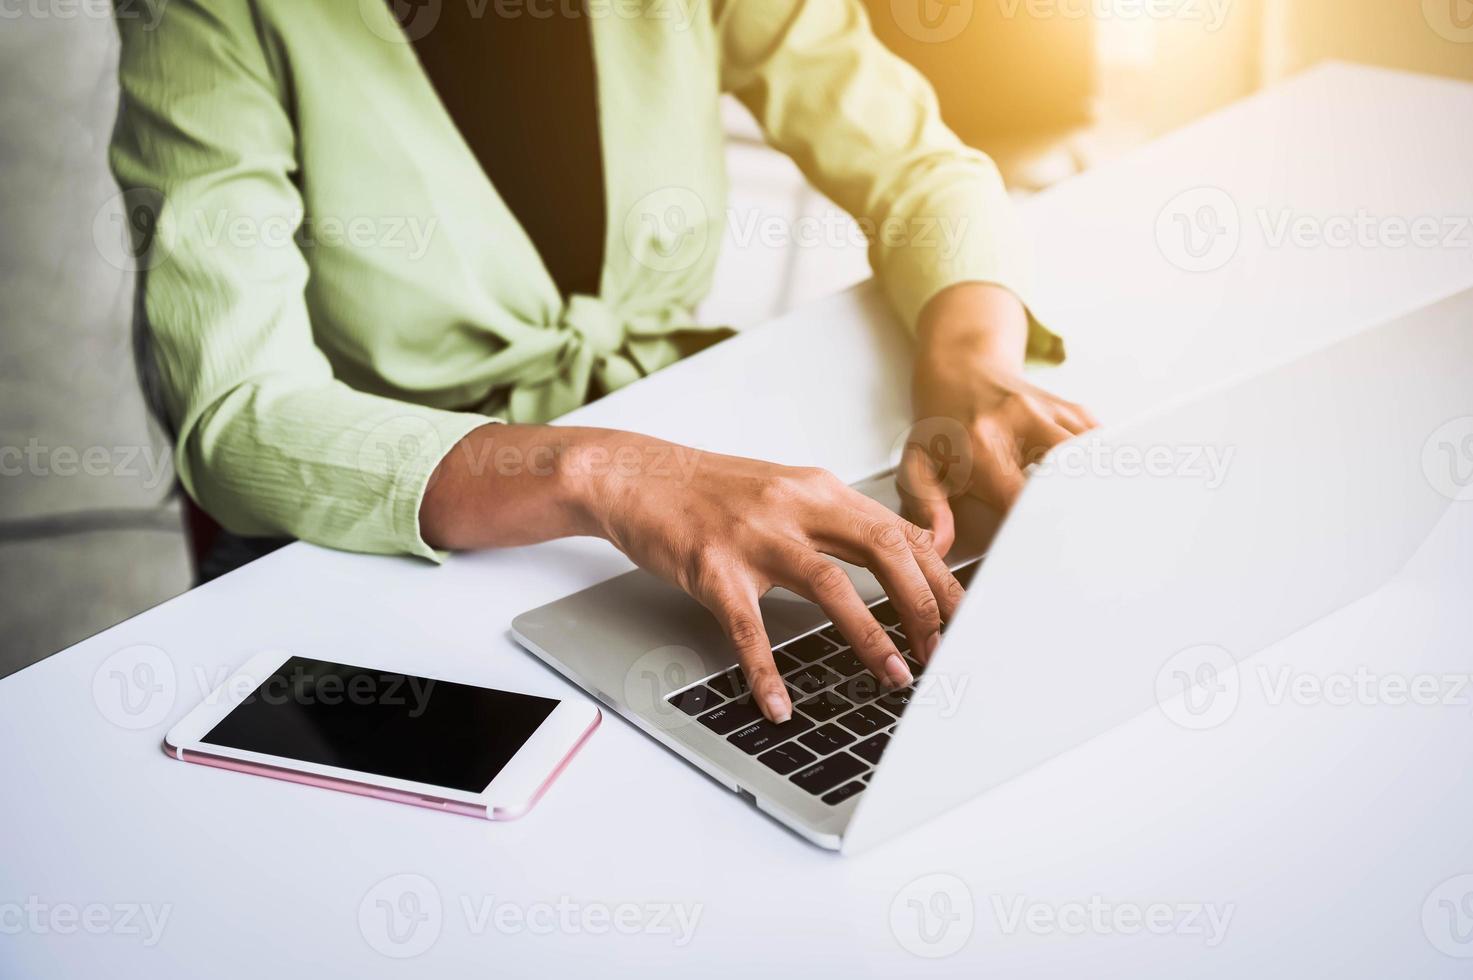 närbild av kvinnans hand som arbetar på hemmakontoret och skriver på tangentbordet foto